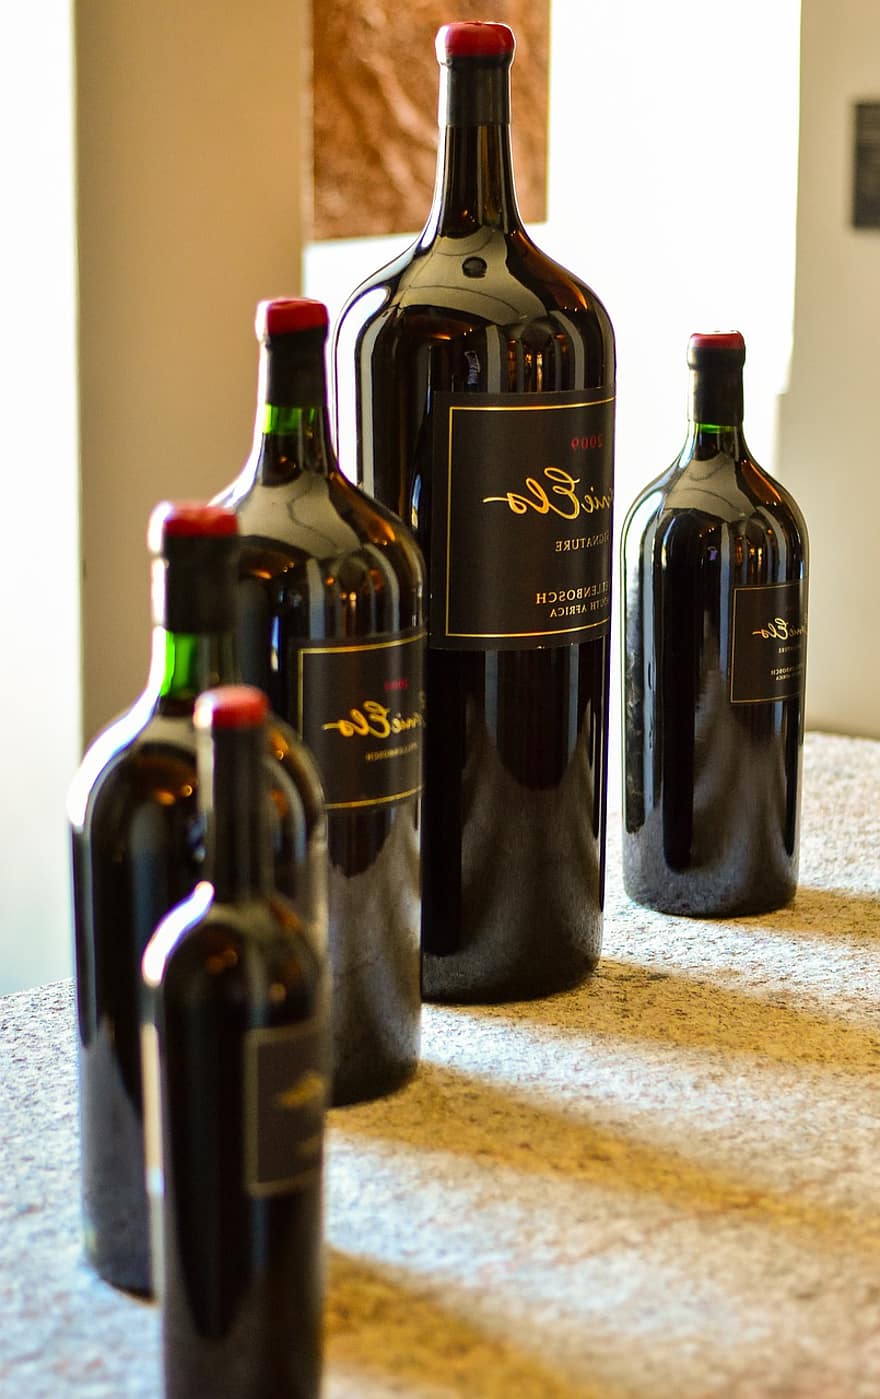 Ernie Els Şarapları, şarap şisesi, şarap, şaraphane, şişe, şarap şişesi, alkol, içki, kapatmak, sıvı, bardak